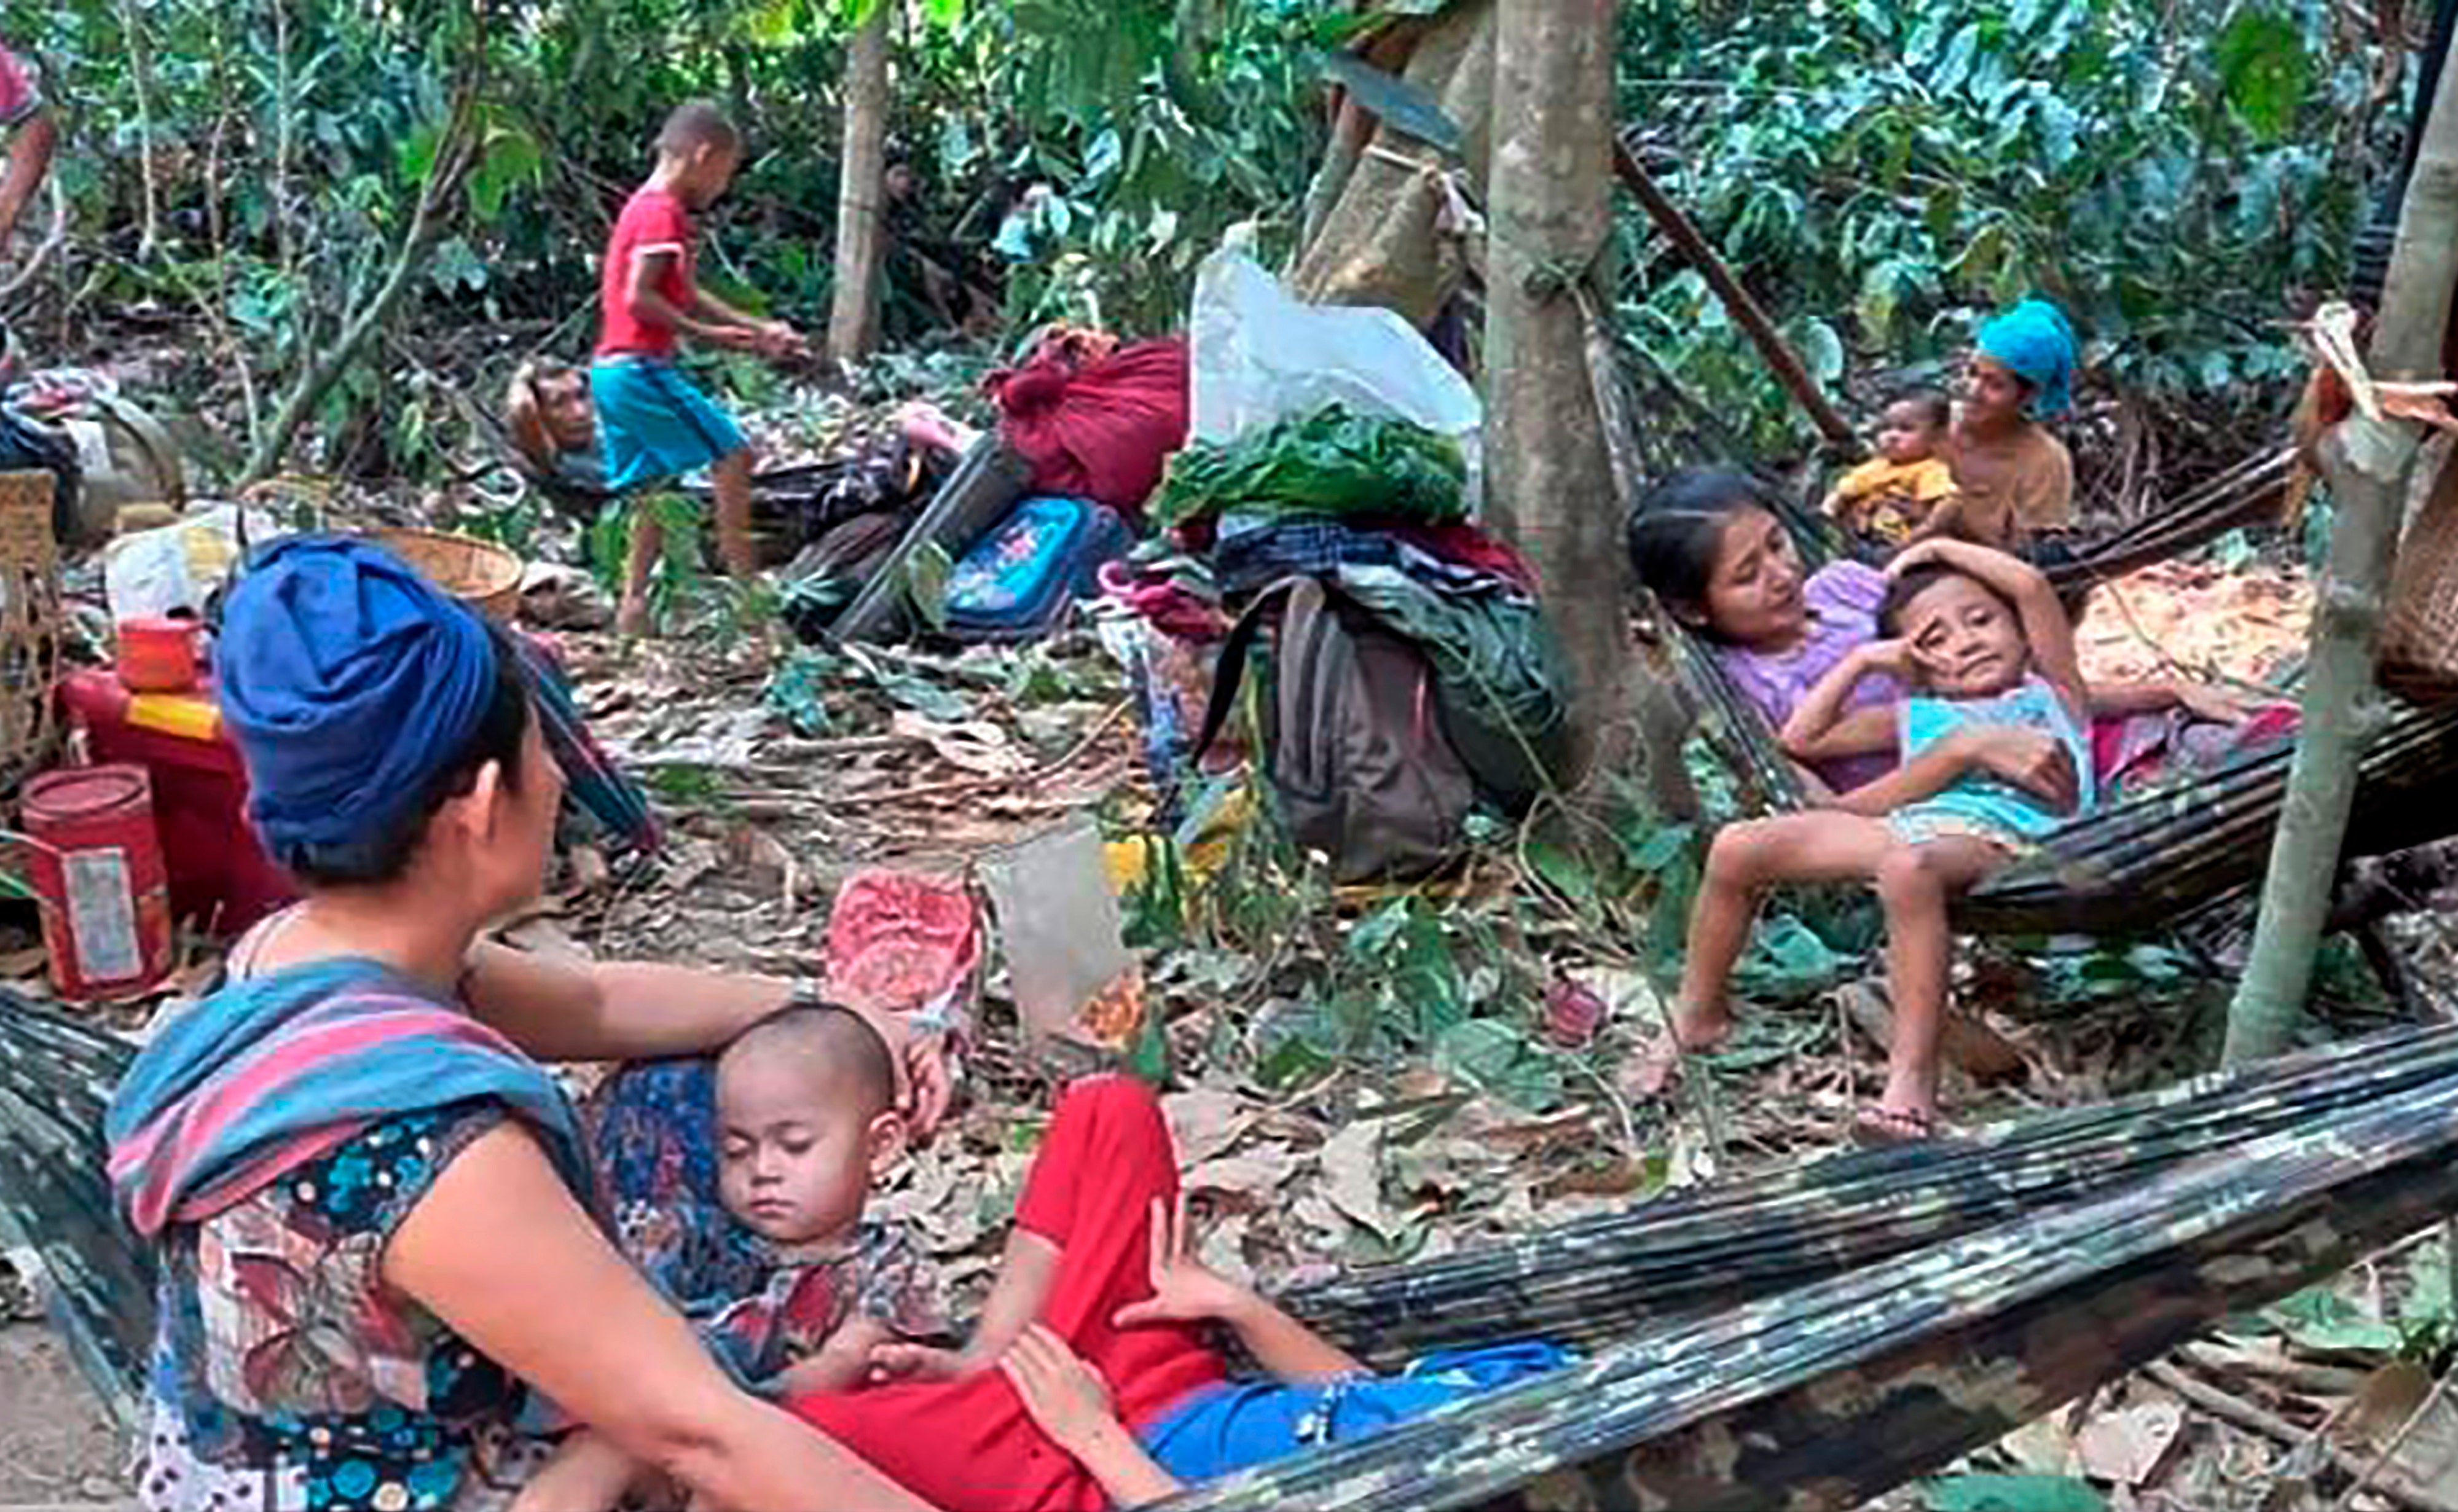 Thousands flee Burma airstrikes, complicating crisis